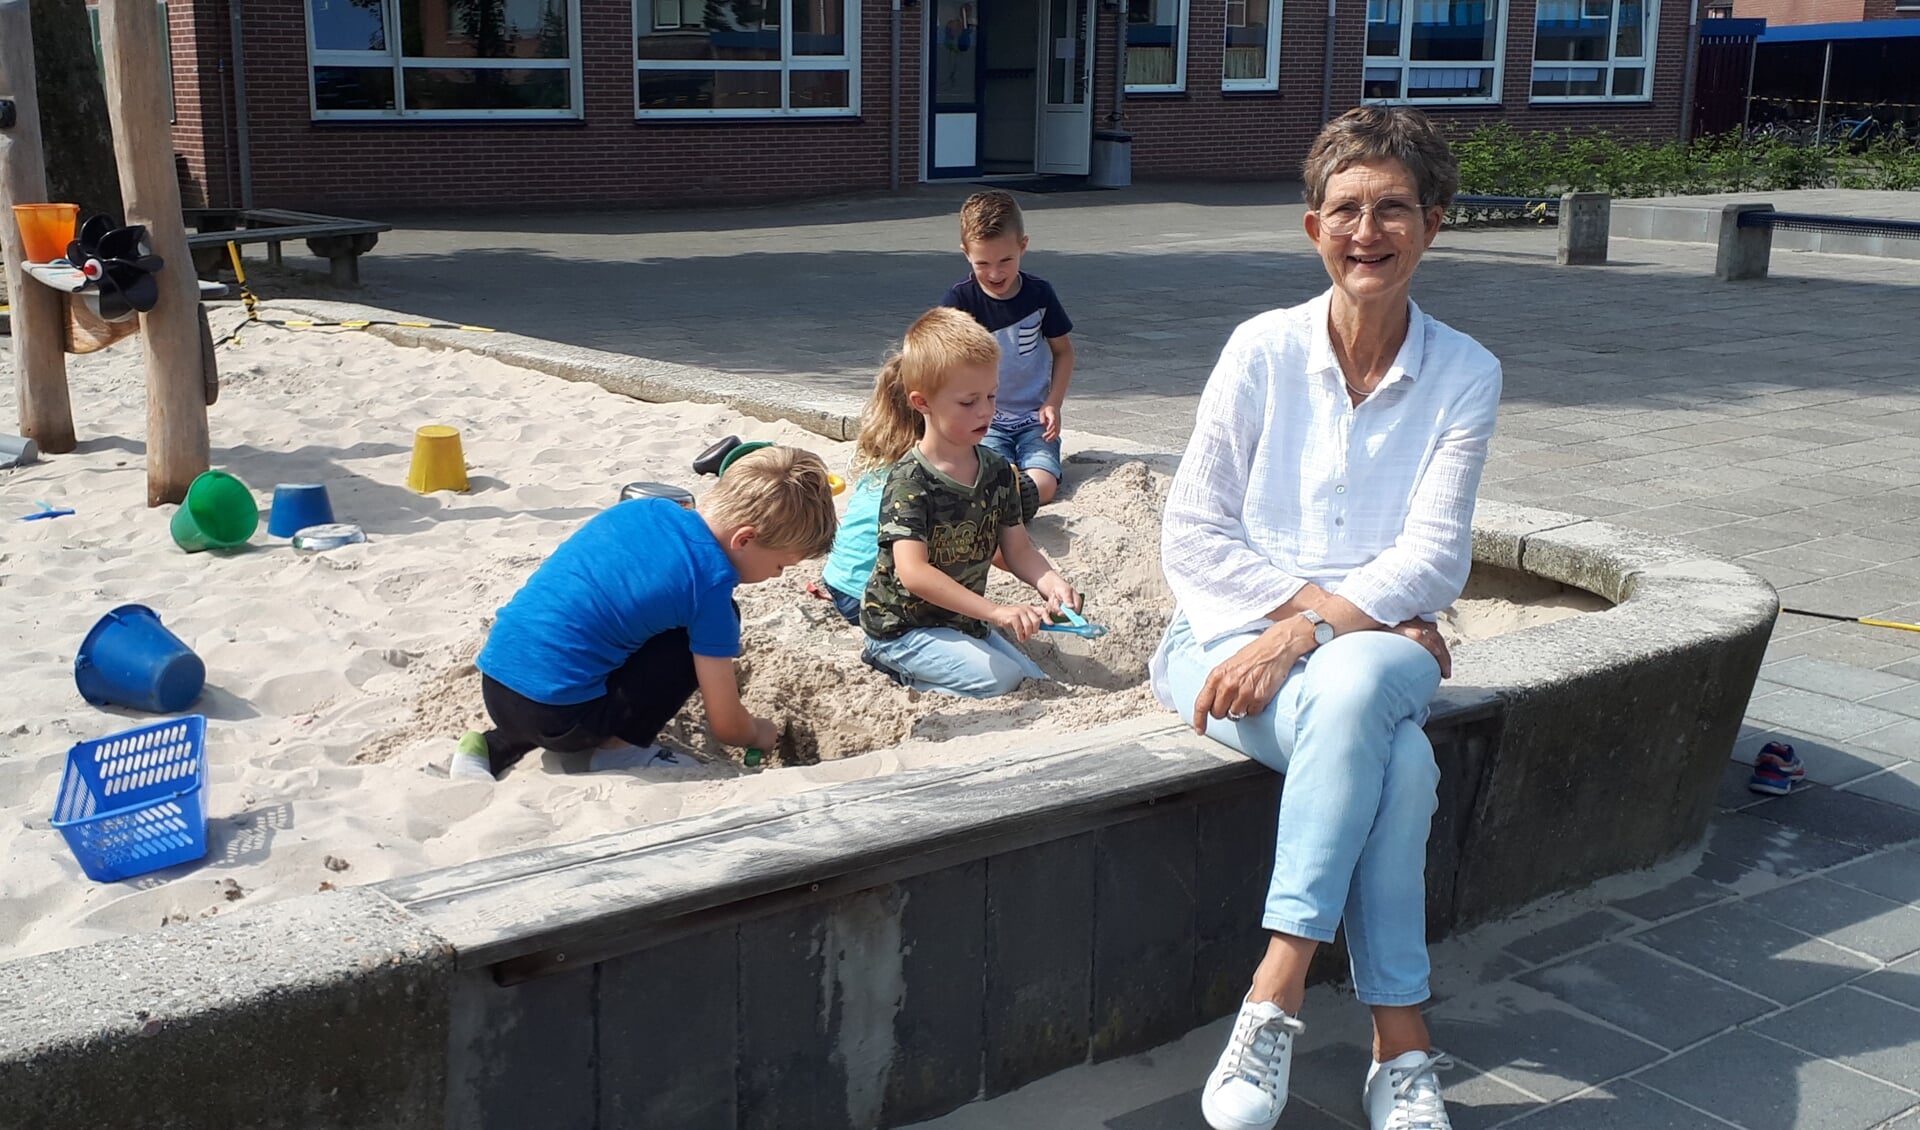 Anneke Beijk heeft al die jaren in de onderbouwgroepen gewerkt. “Ik geniet van de onbevangenheid van jonge kinderen. Ze zijn puur en nieuwsgierig." Foto: PR